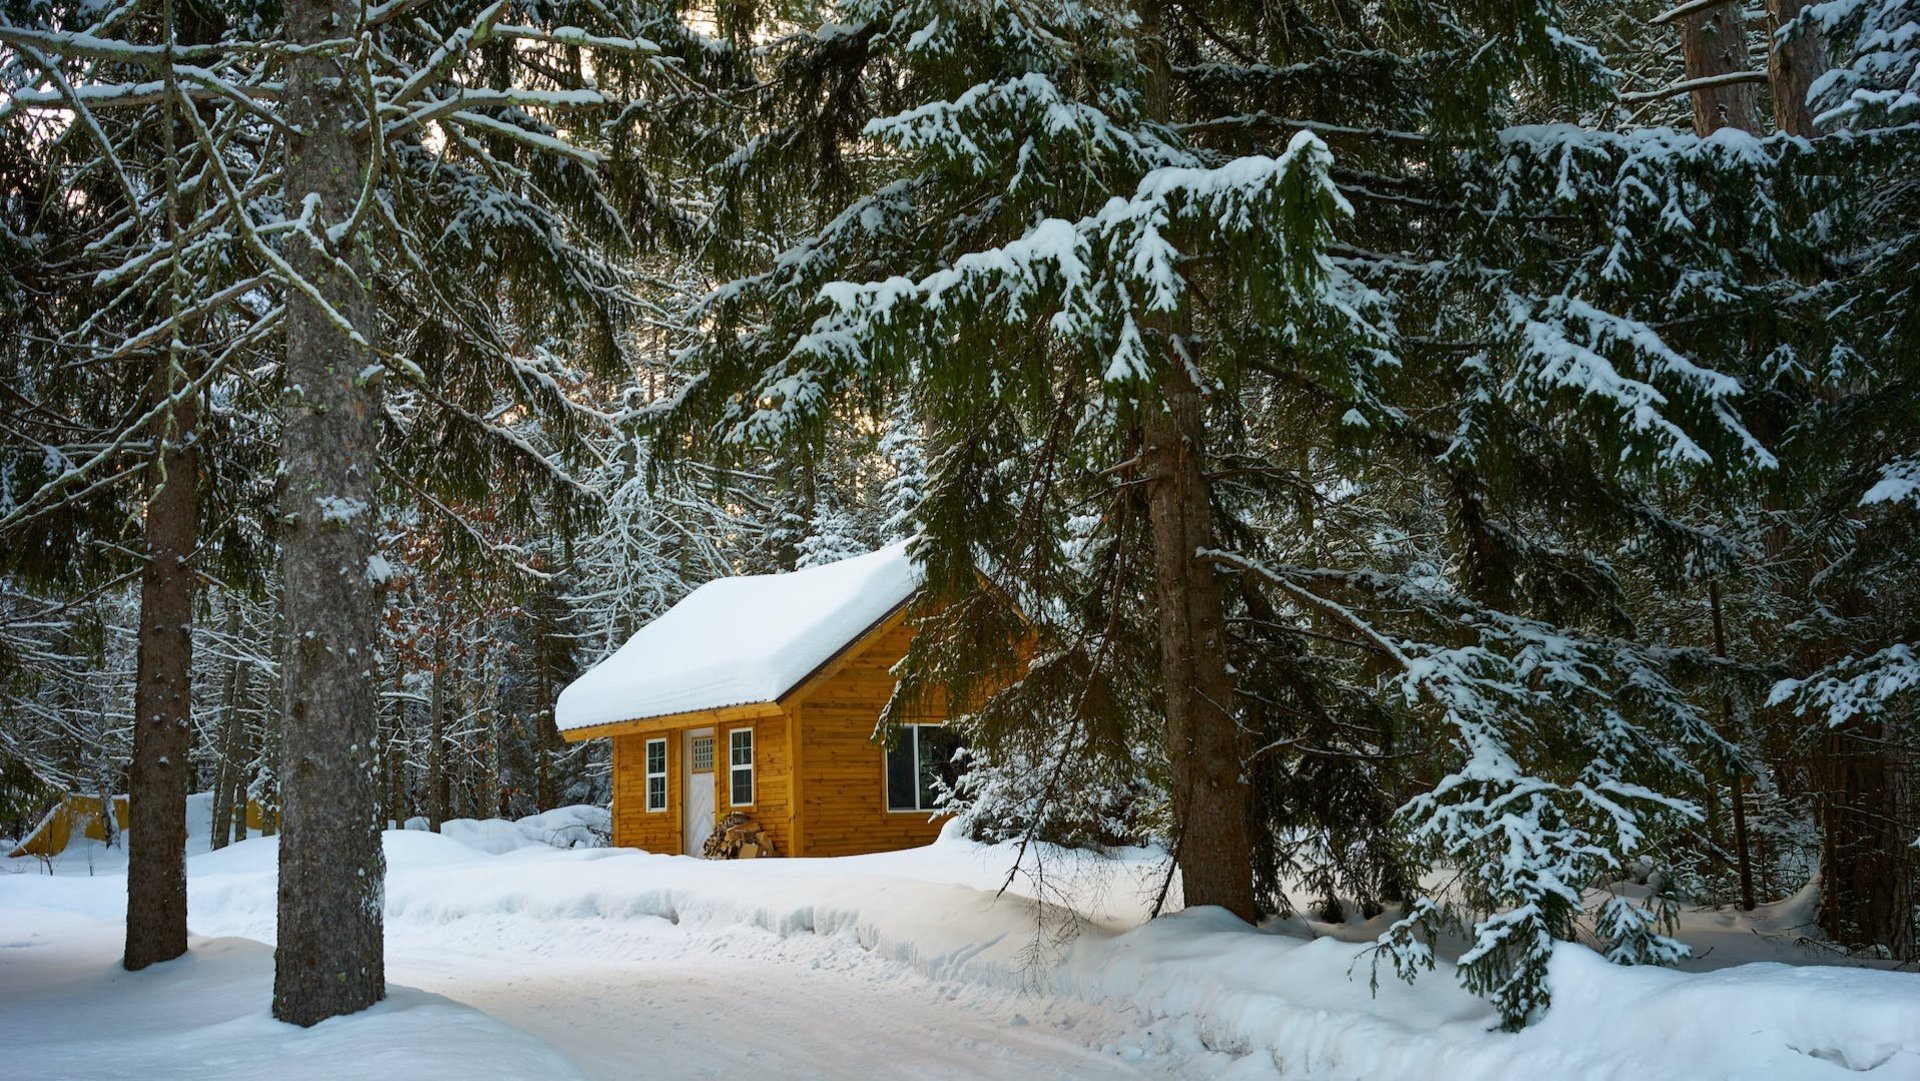 Das Foto zeigt eine schneebedeckte Hütte in einem Tannenwald.